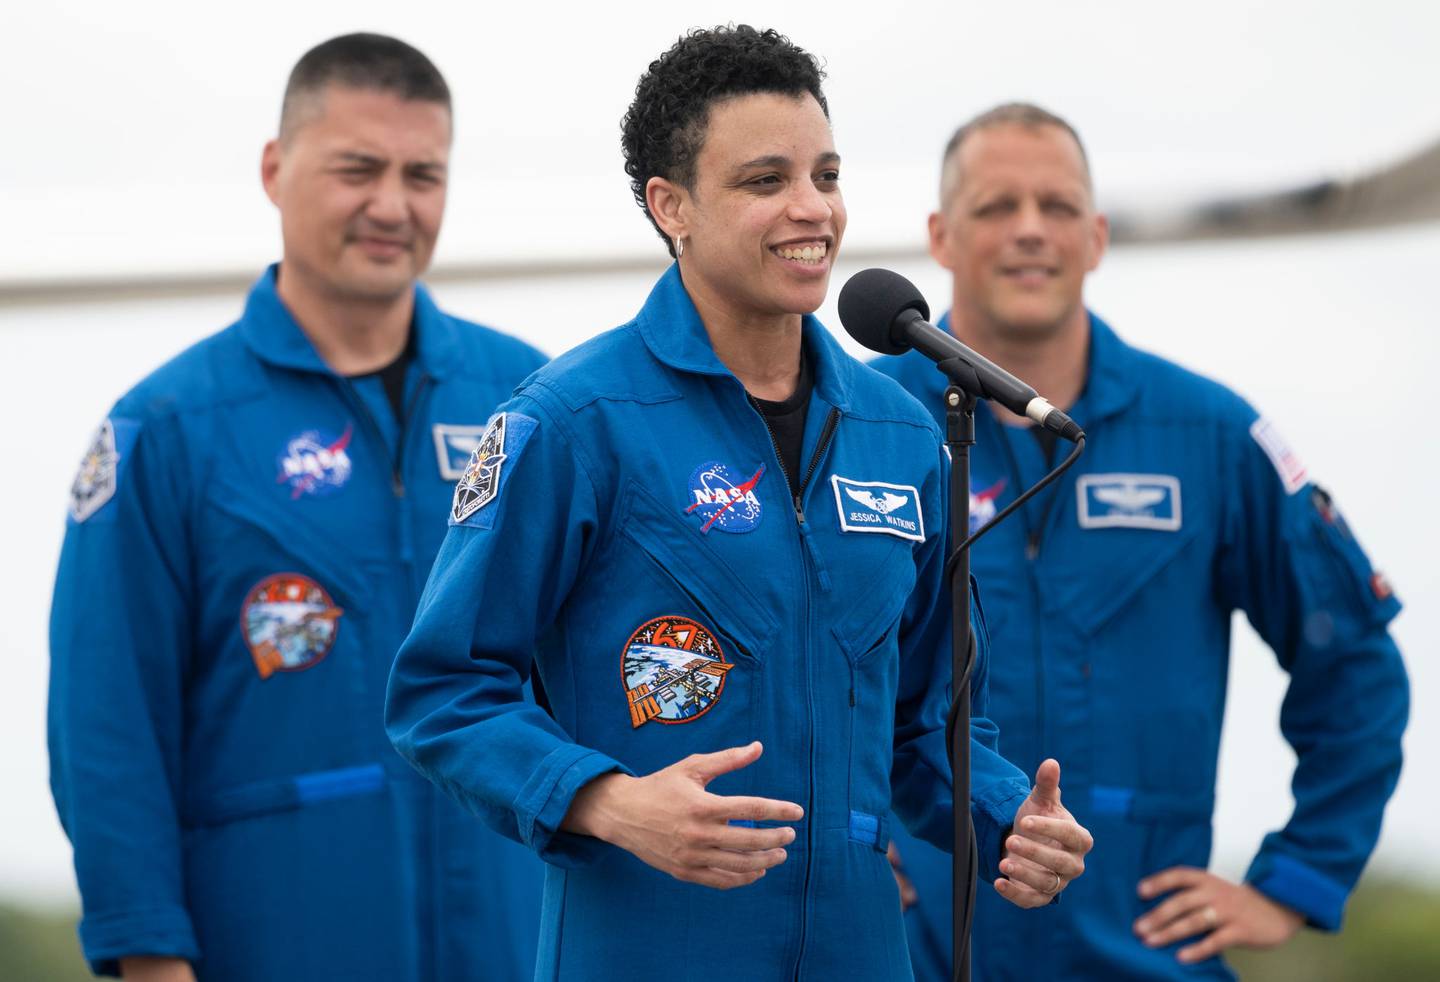 La astronauta puede convertirse en la primera mujer en llegar a la Luna, como parte del Programa Artemis de la NASA.